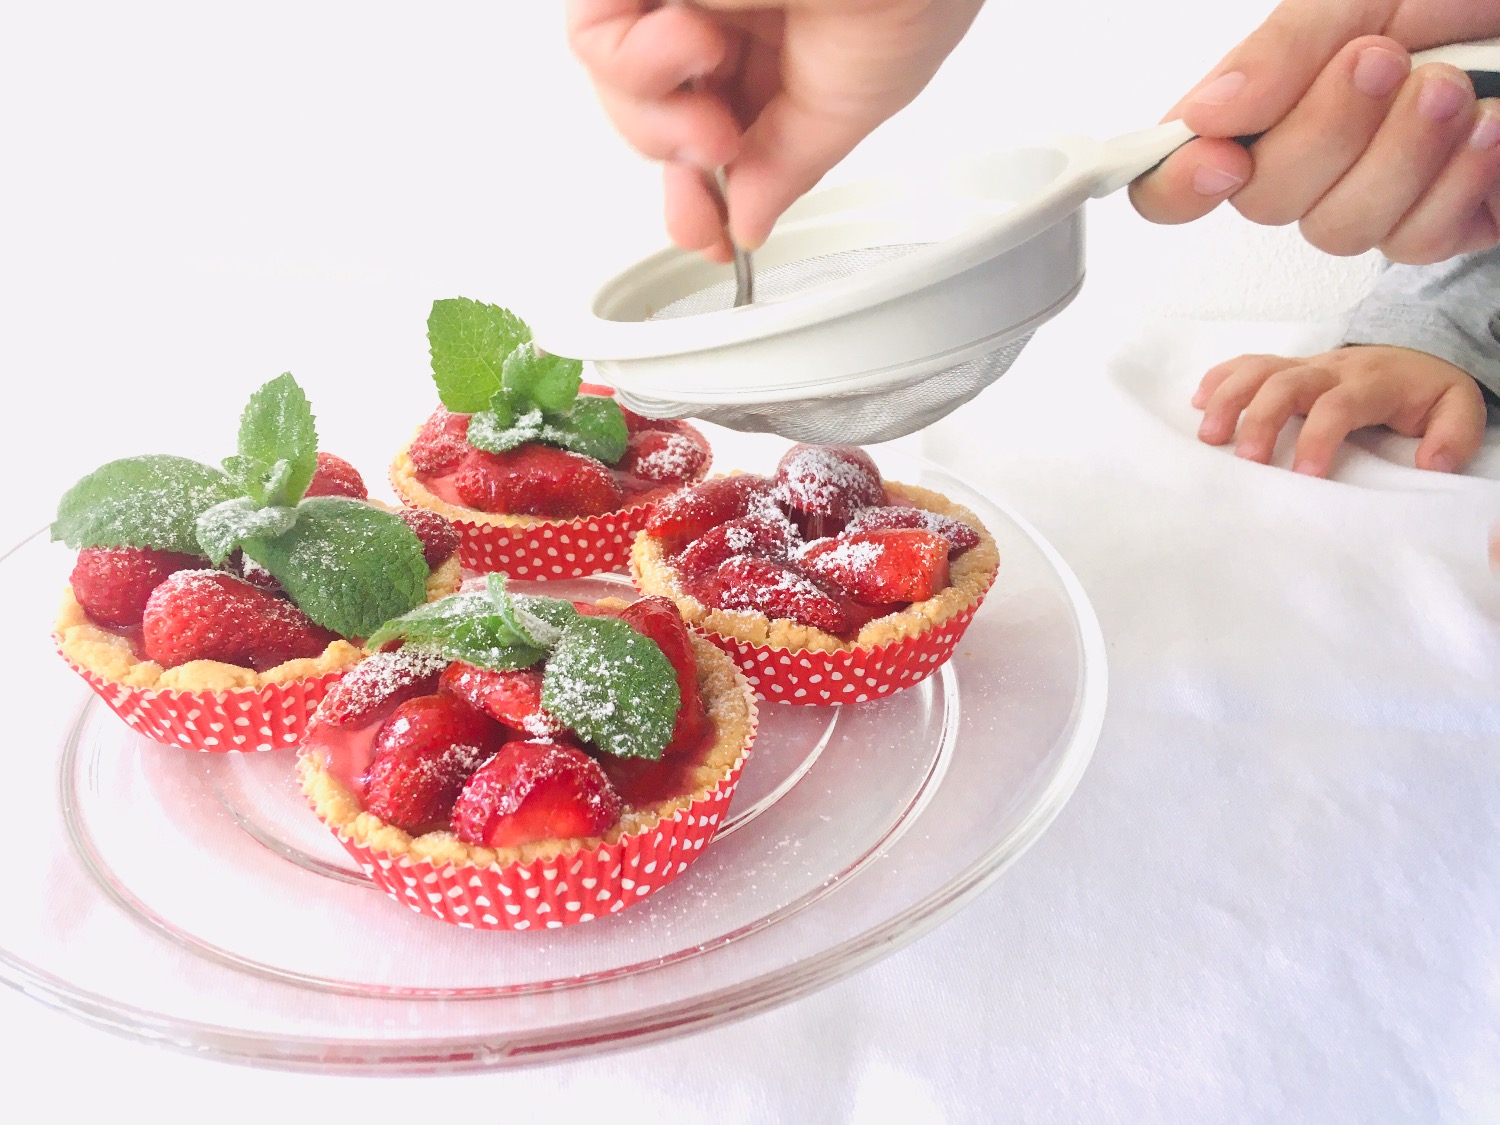 Titelbild zur Idee für die Beschäftigung mit Kindern 'Erdbeer-Tartelettes backen – glutenfrei & zuckerfrei'